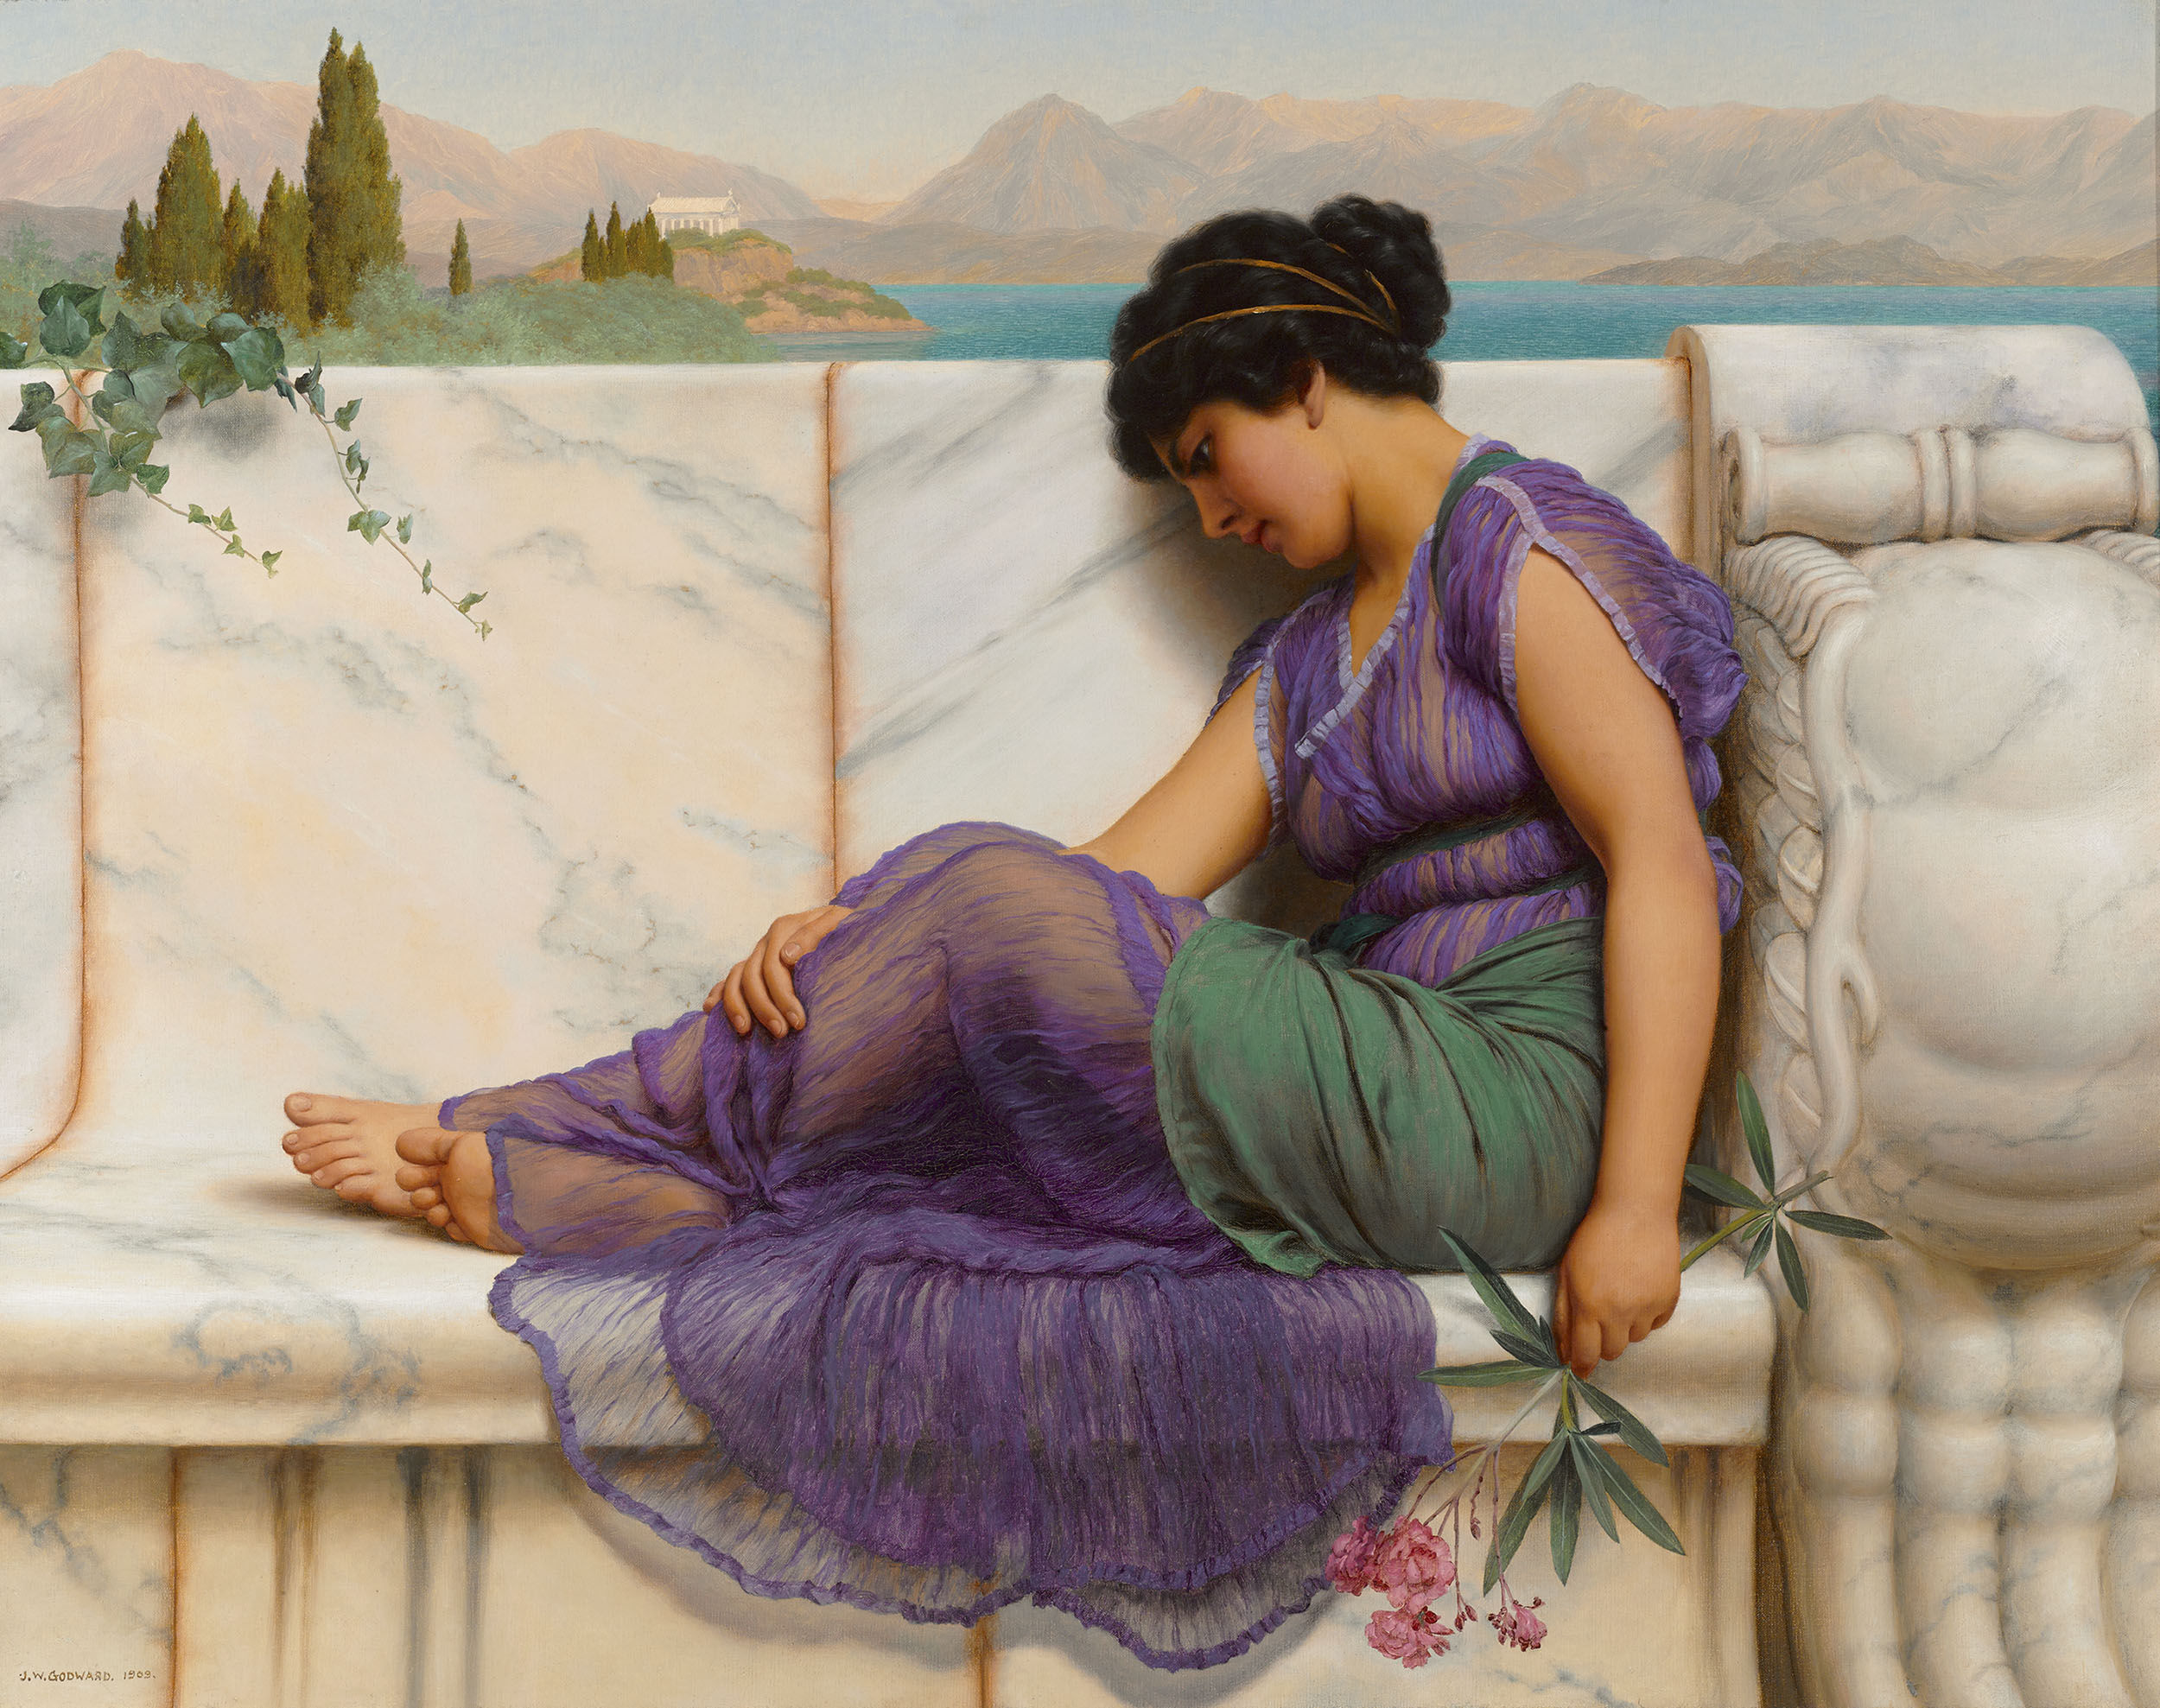 白昼夢 by John William Godward - 1909年 - 58.4 × 73.7 cm 